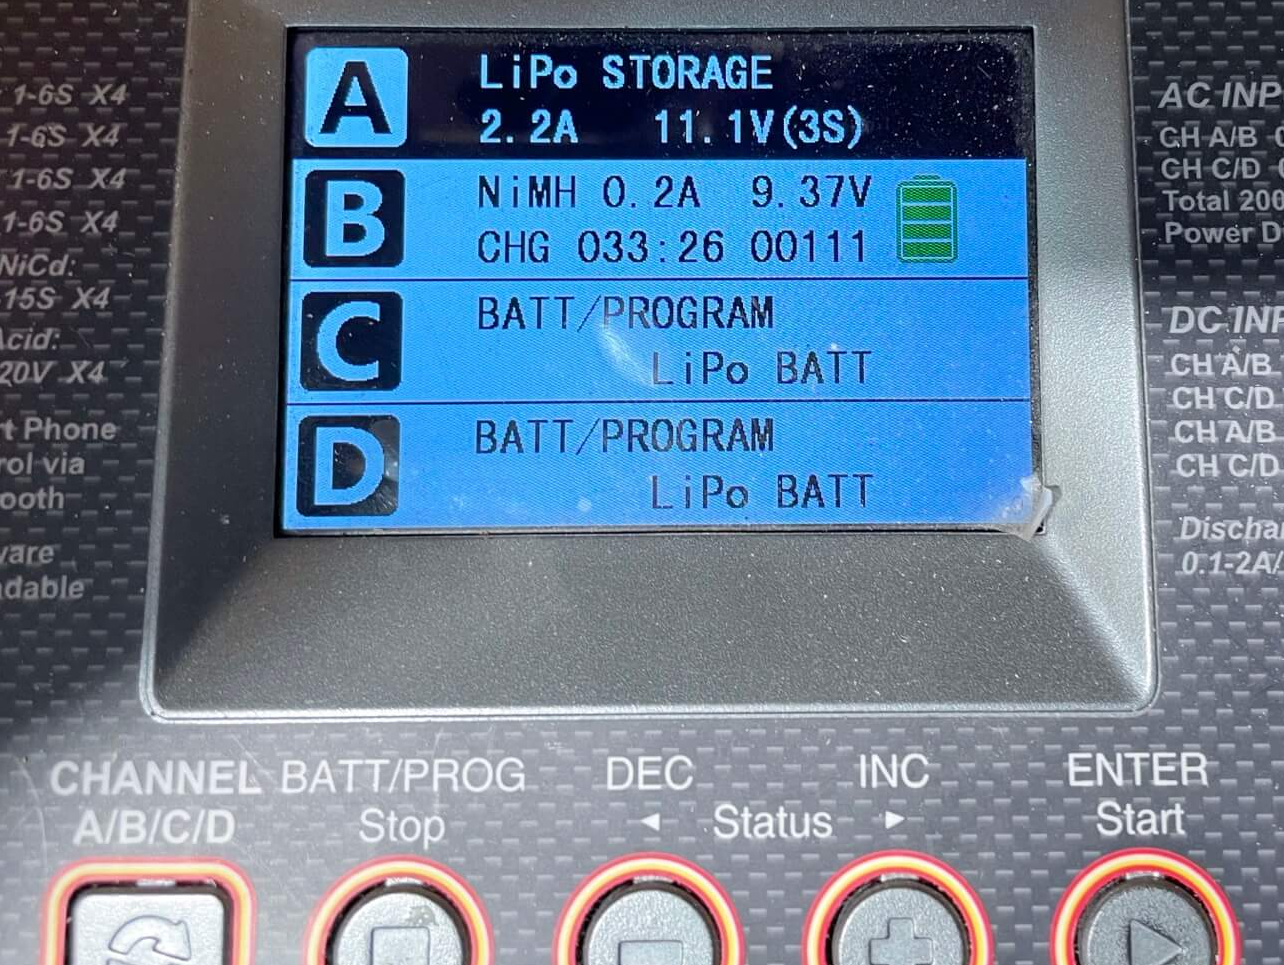 Dieses Ladegerät bietet das LiPo Storage Programm.